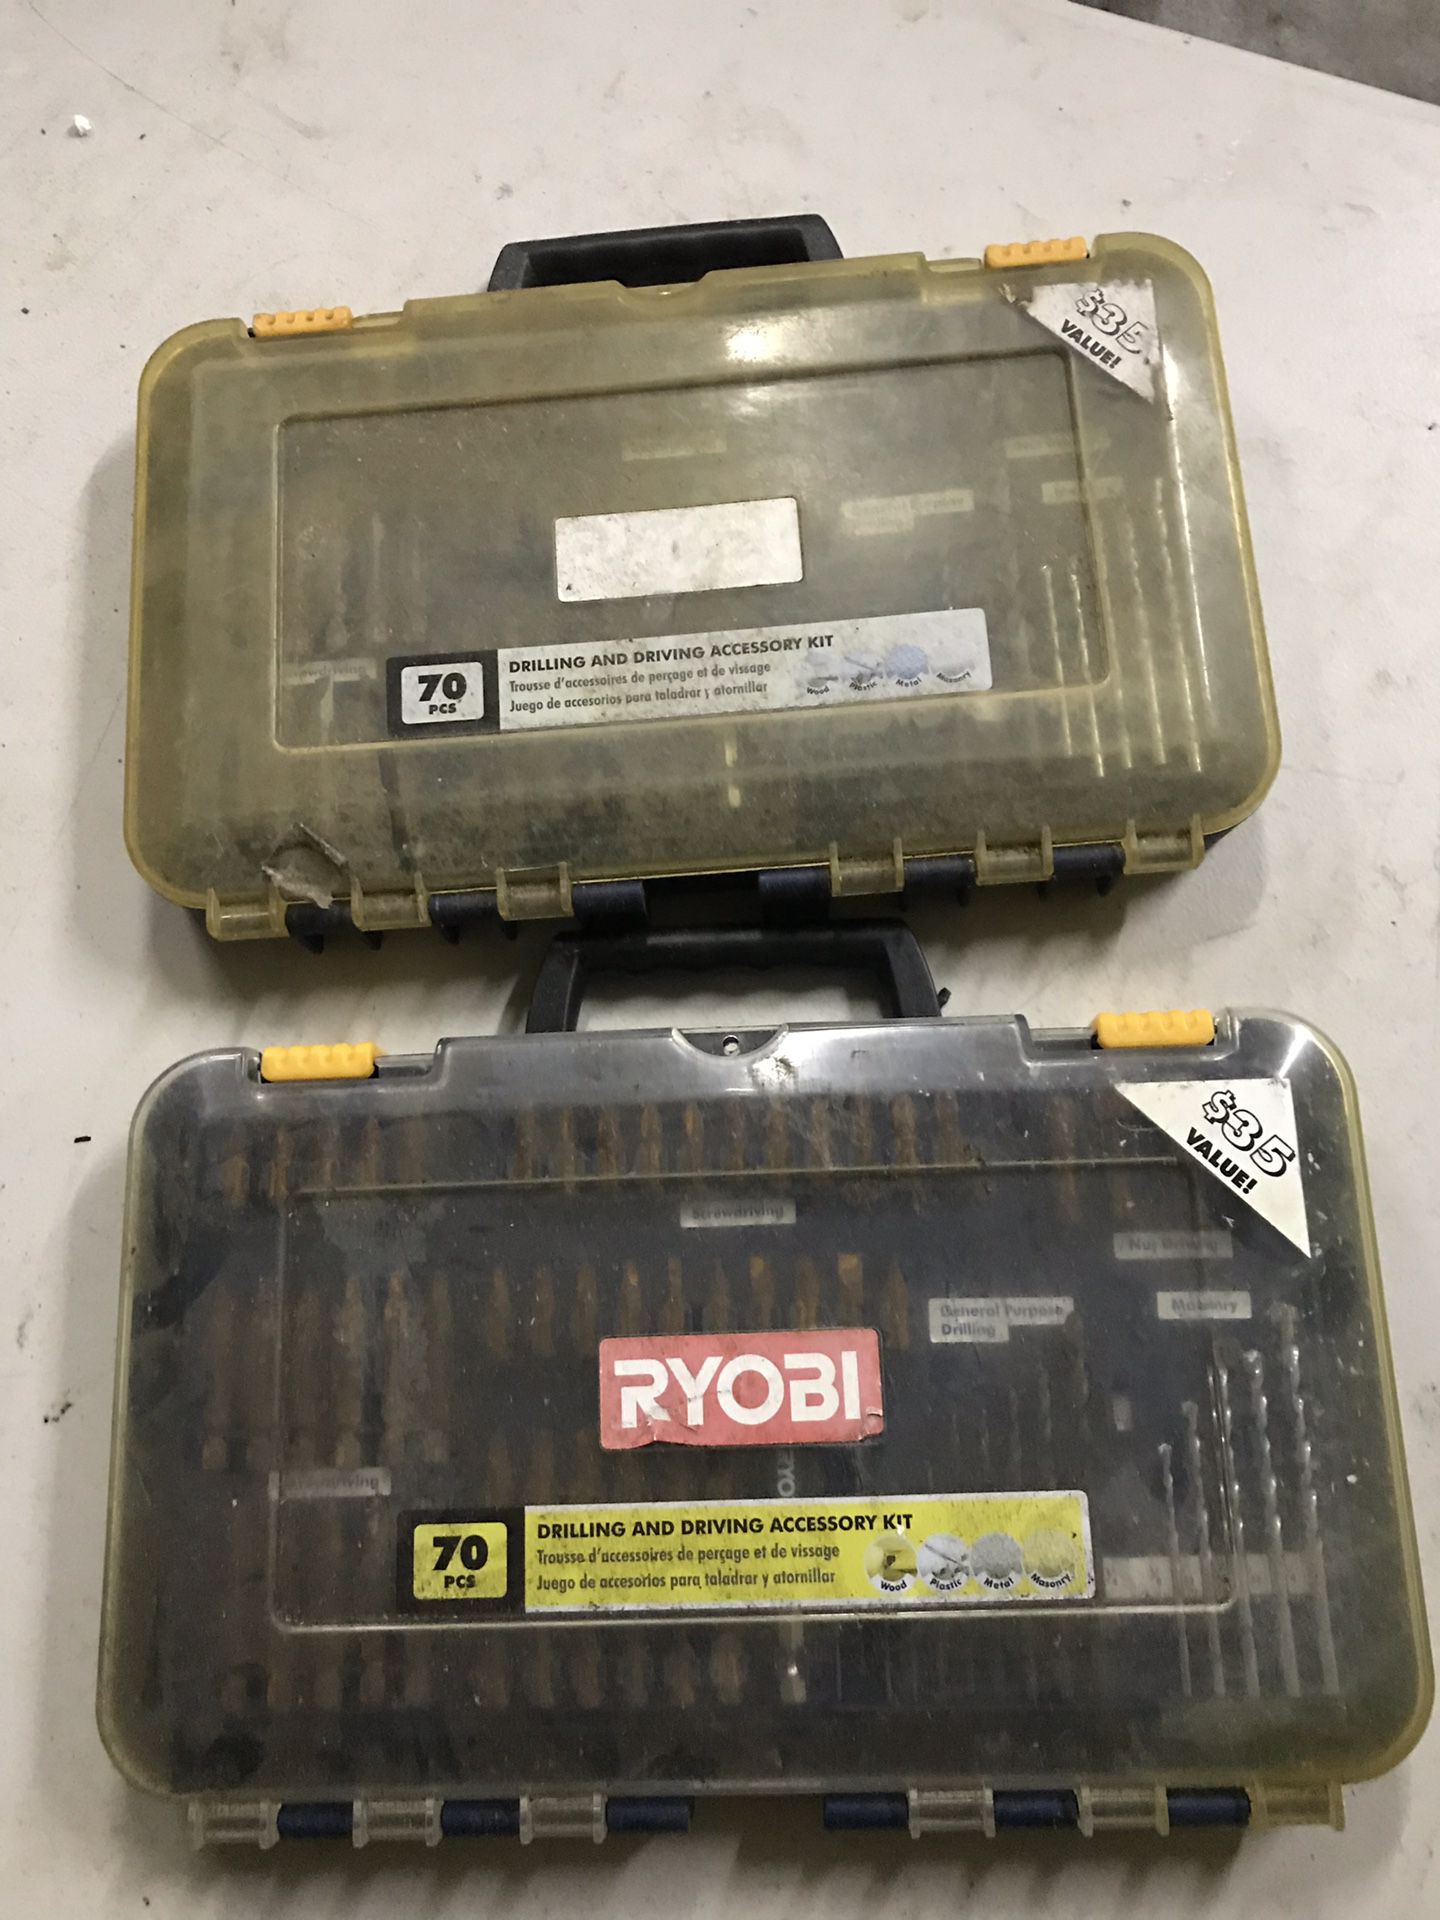 Ryobi drill and drive accessories